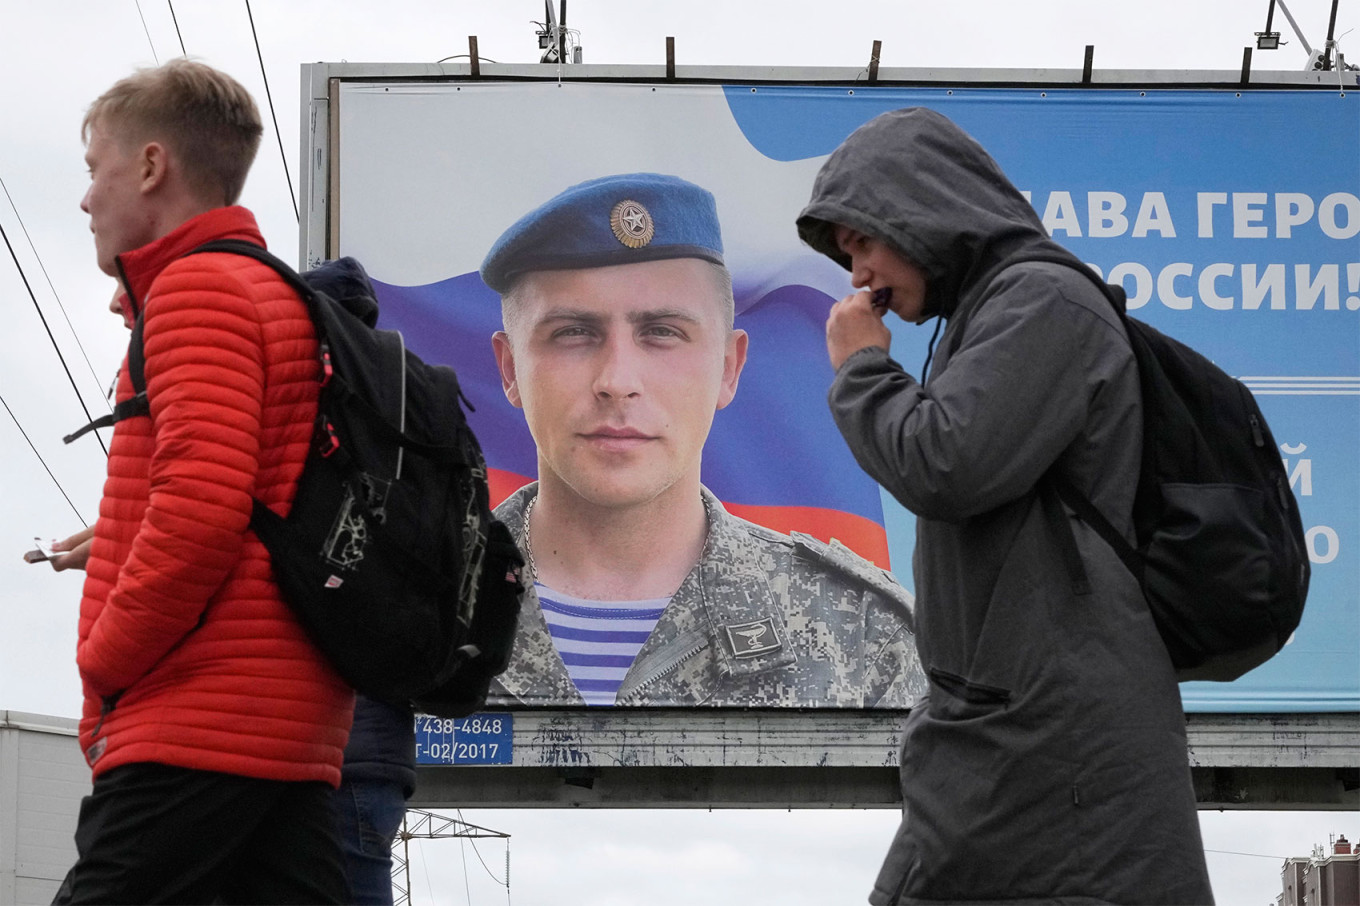 Двое молодых людей проходят мимо рекламного щита в Сент-Луисе.  Петербург с фотографией русского офицера.  Дмитрий Ловецкий / AP / ТАСС